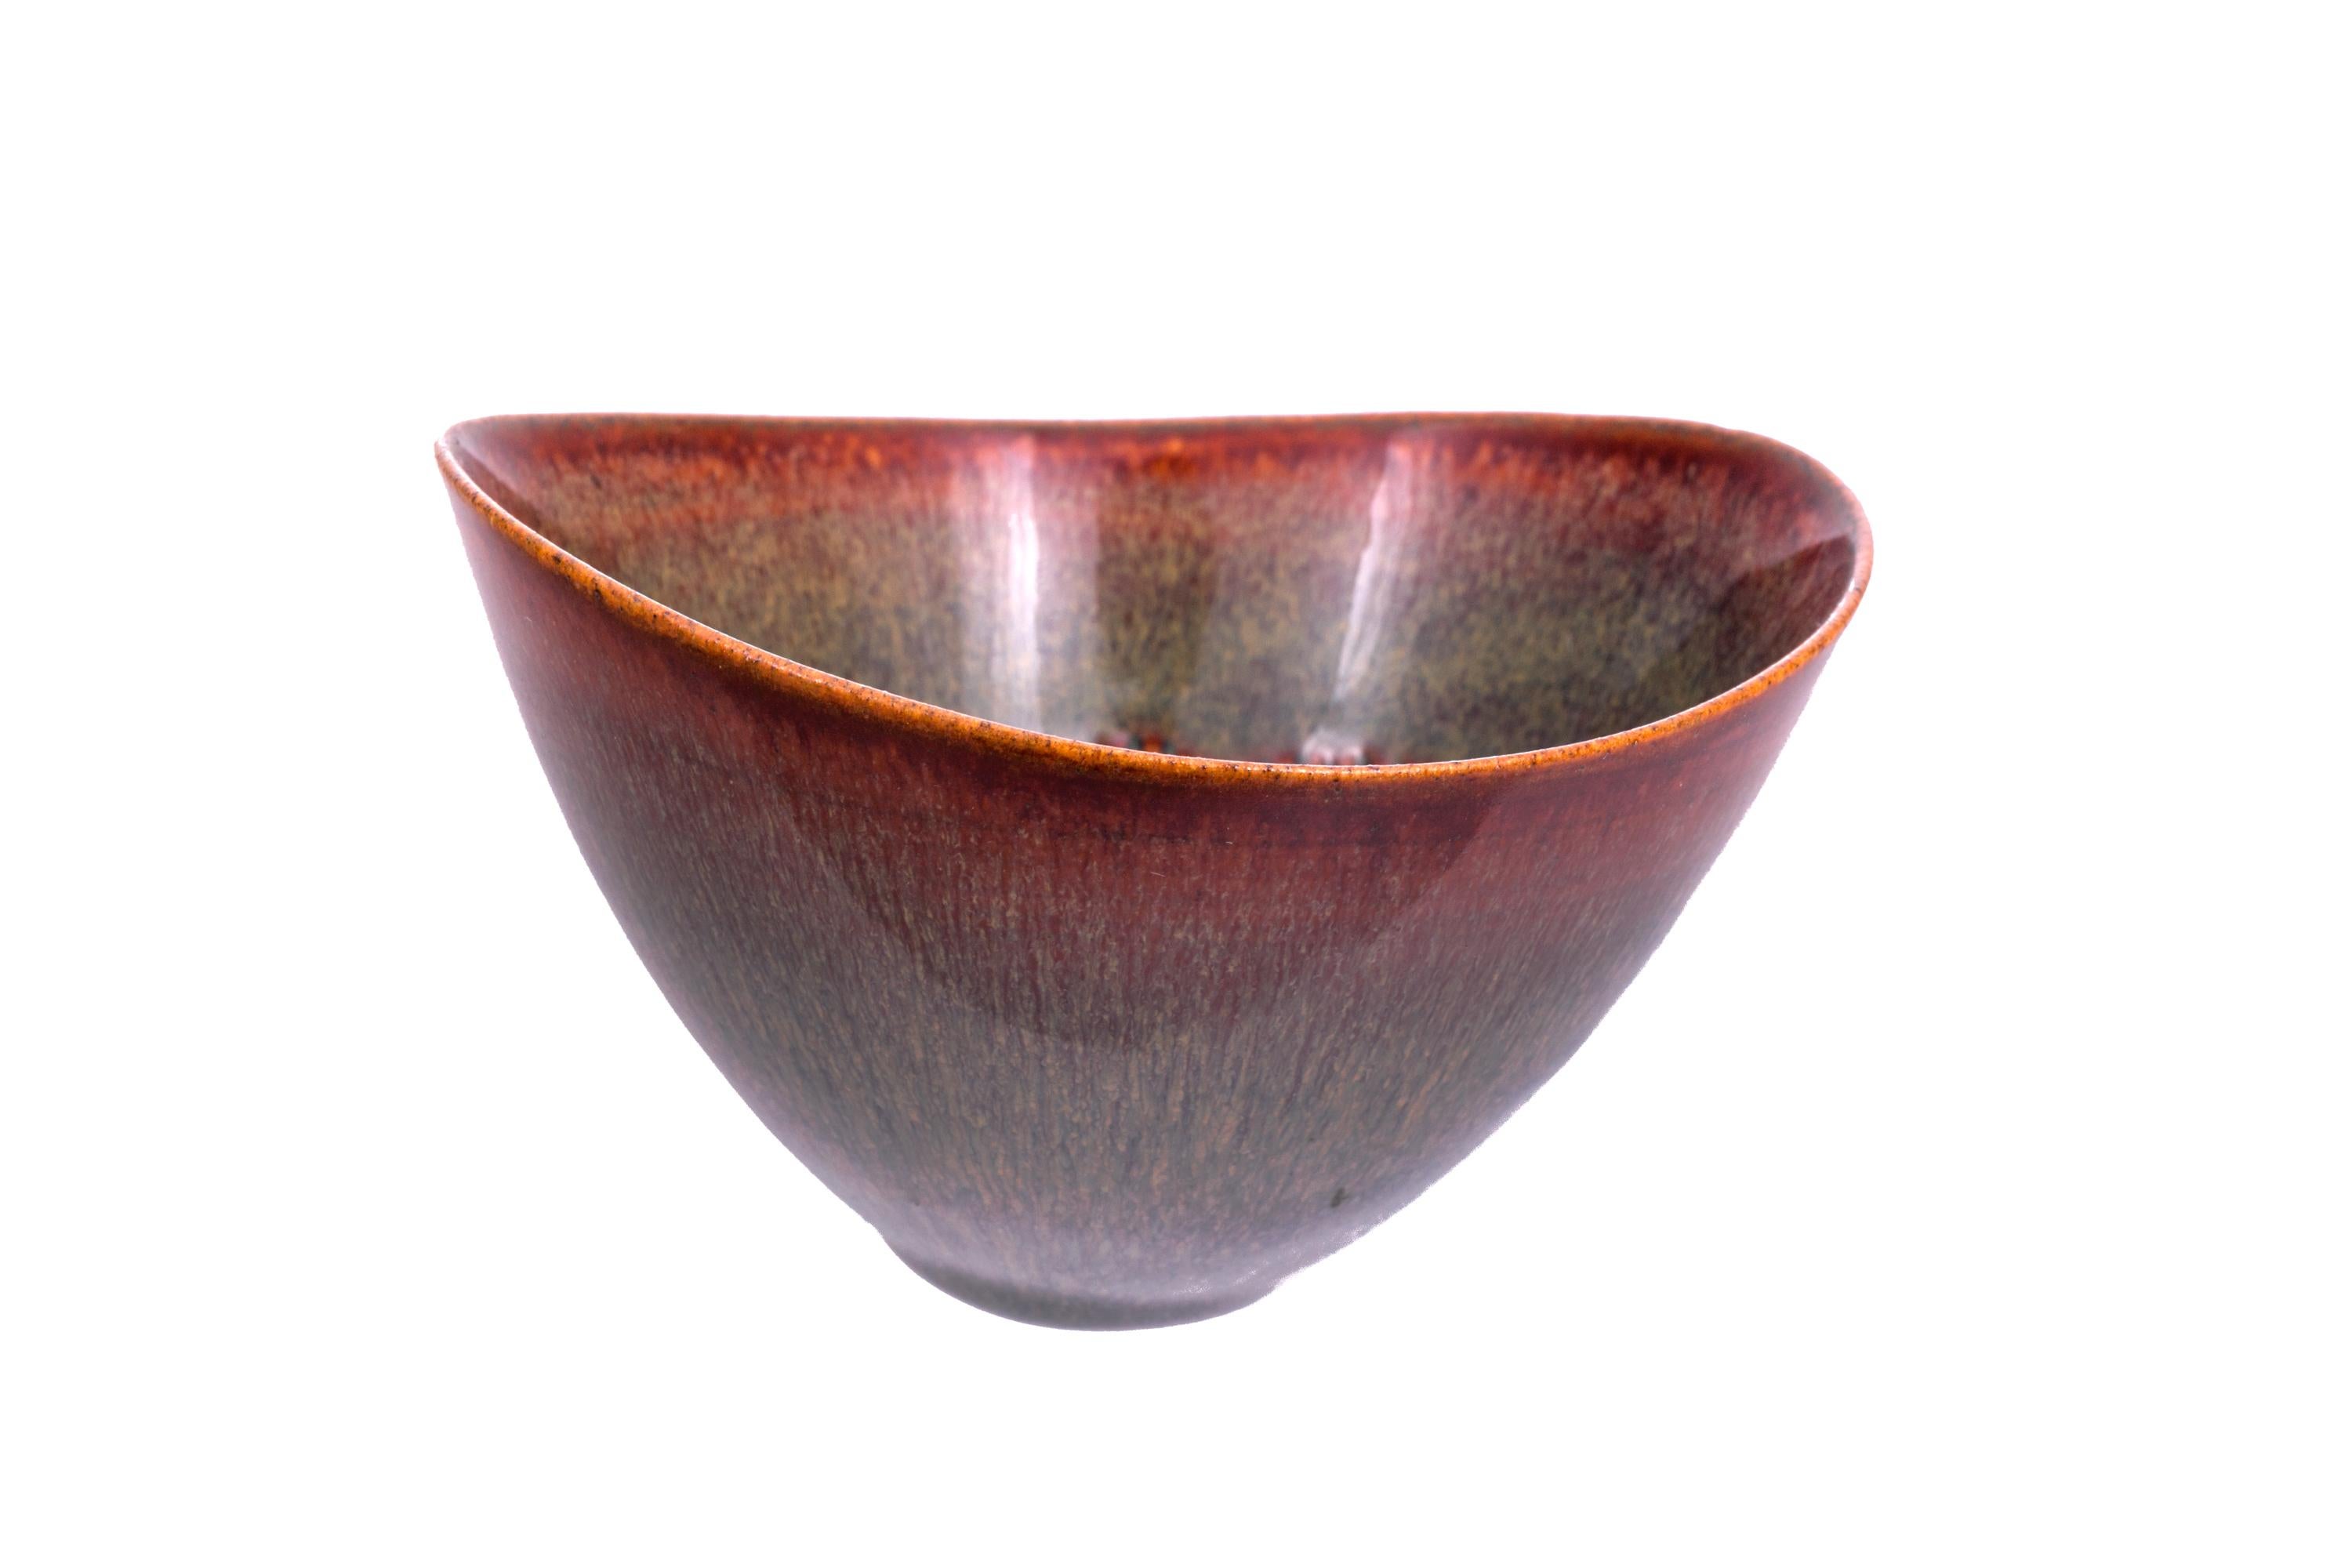 Scandinavian Modern Stig Lindberg Signed Glazed Ceramic Bowl for Gustavberg, Sweden, 1950s